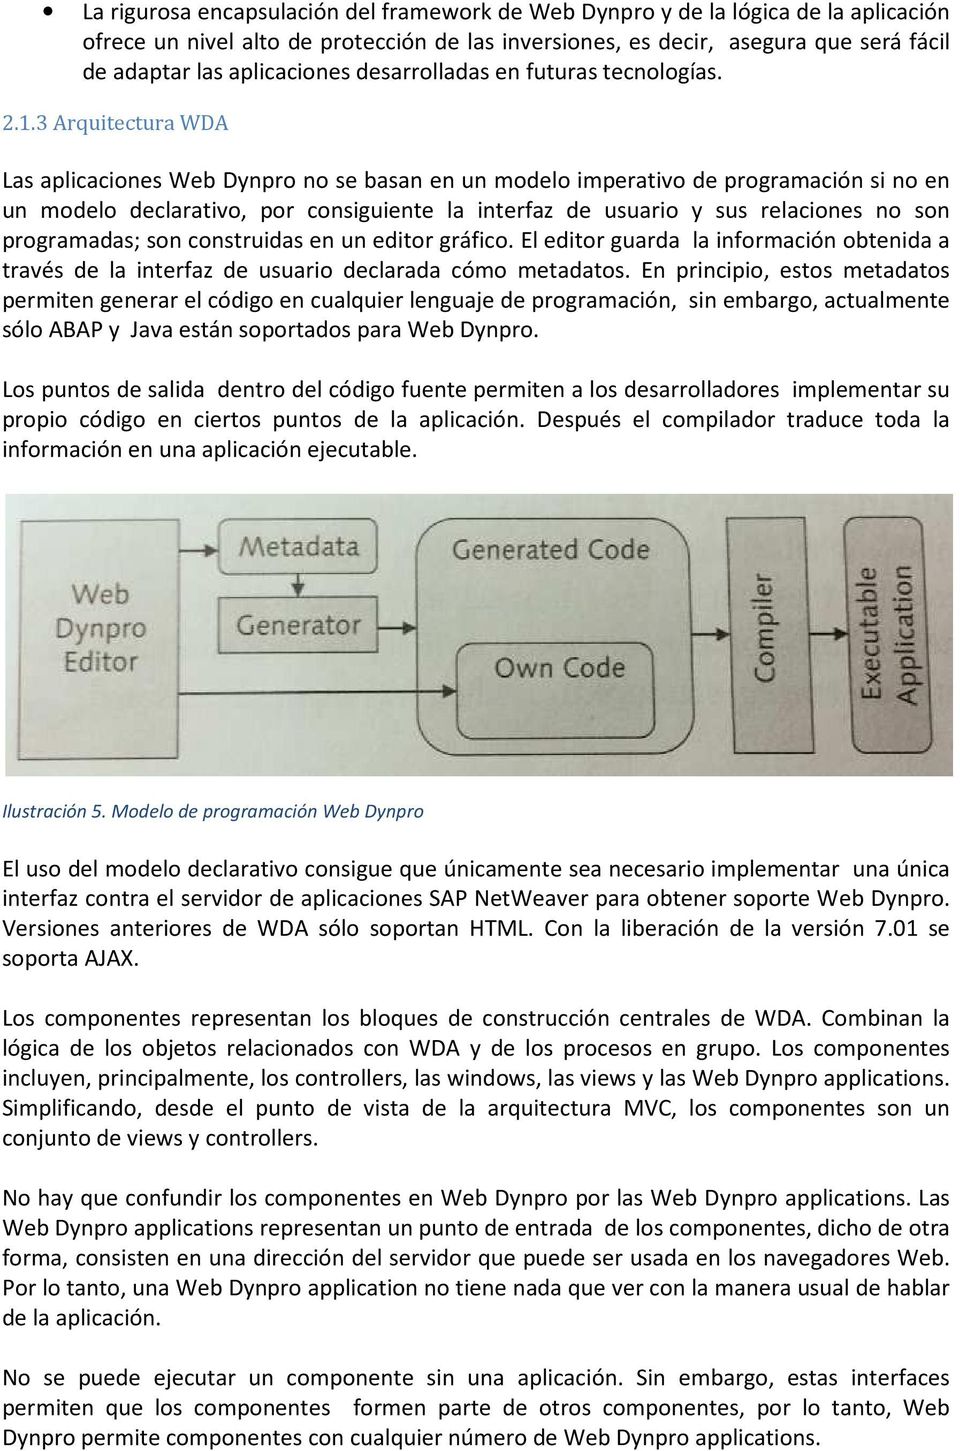 3 Arquitectura WDA Las aplicaciones Web Dynpro no se basan en un modelo imperativo de programación si no en un modelo declarativo, por consiguiente la interfaz de usuario y sus relaciones no son